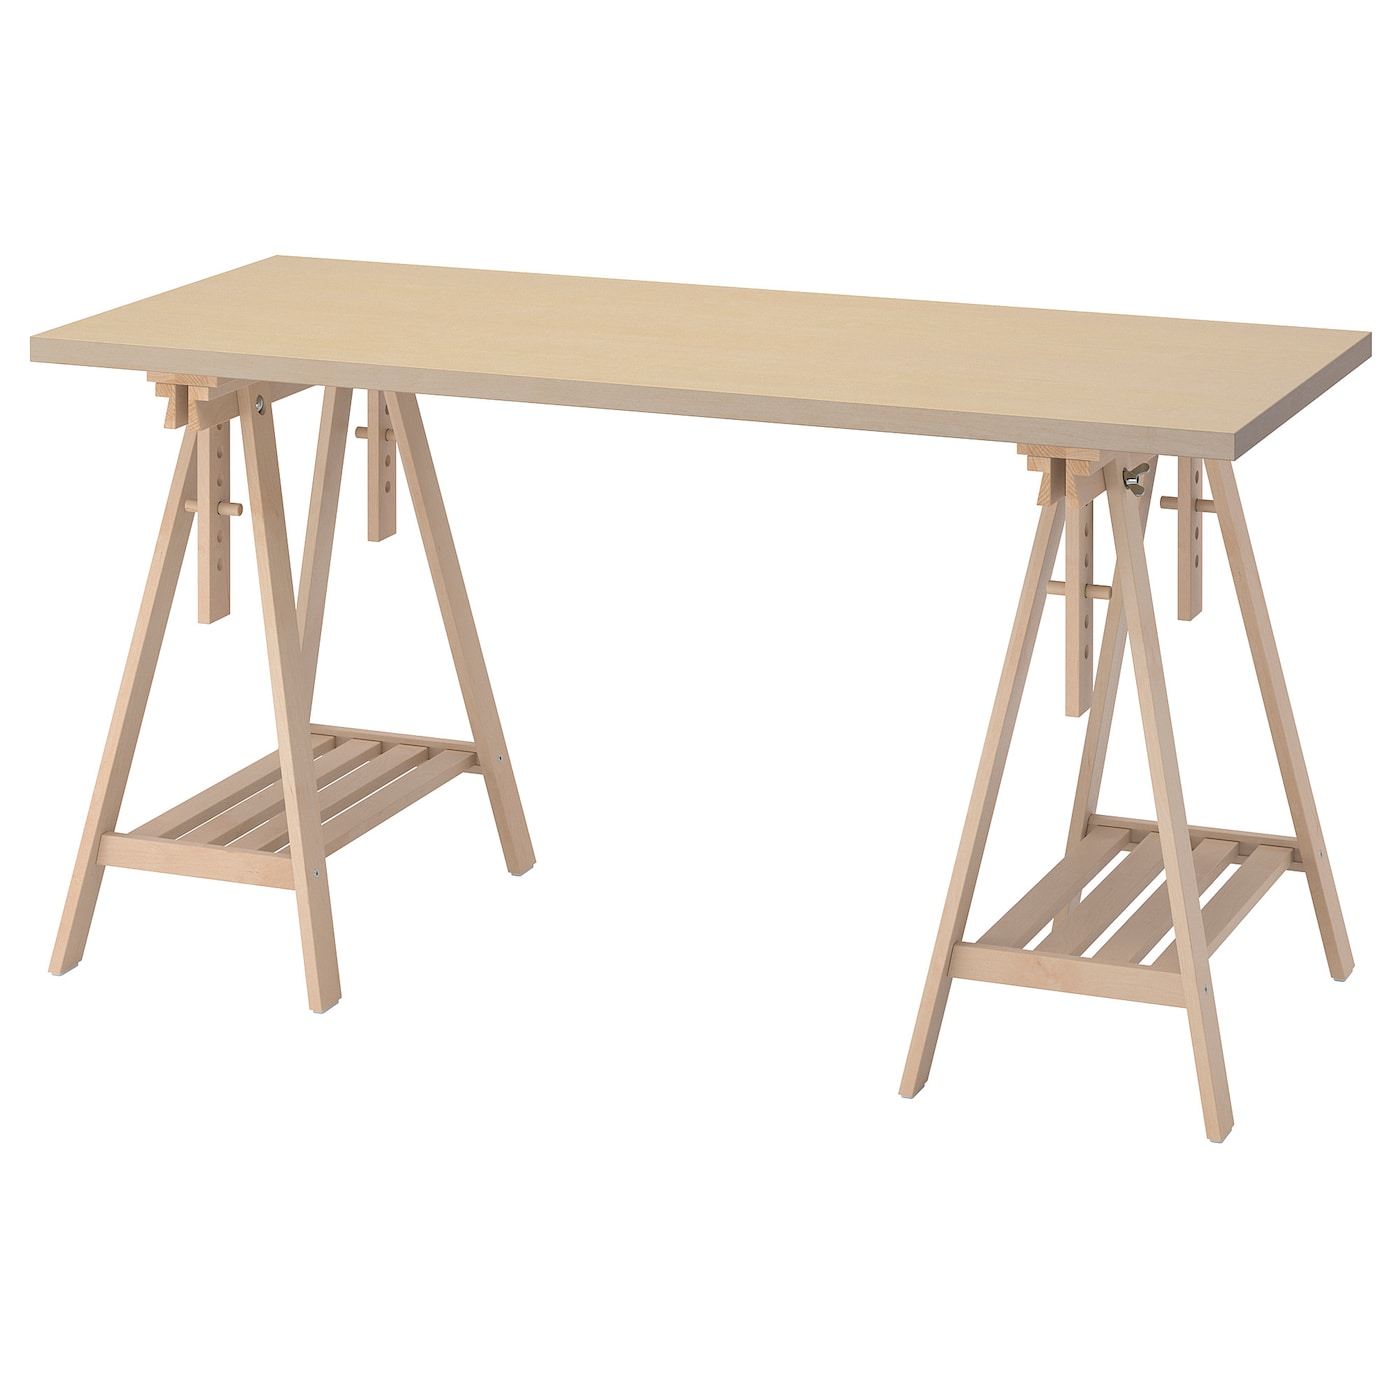 Рабочий стол - IKEA MÅLSKYTT/MALSKYTT/MITTBACK, 140х60 см, береза, МОЛСКЮТТ/МИТТБАКК ИКЕА